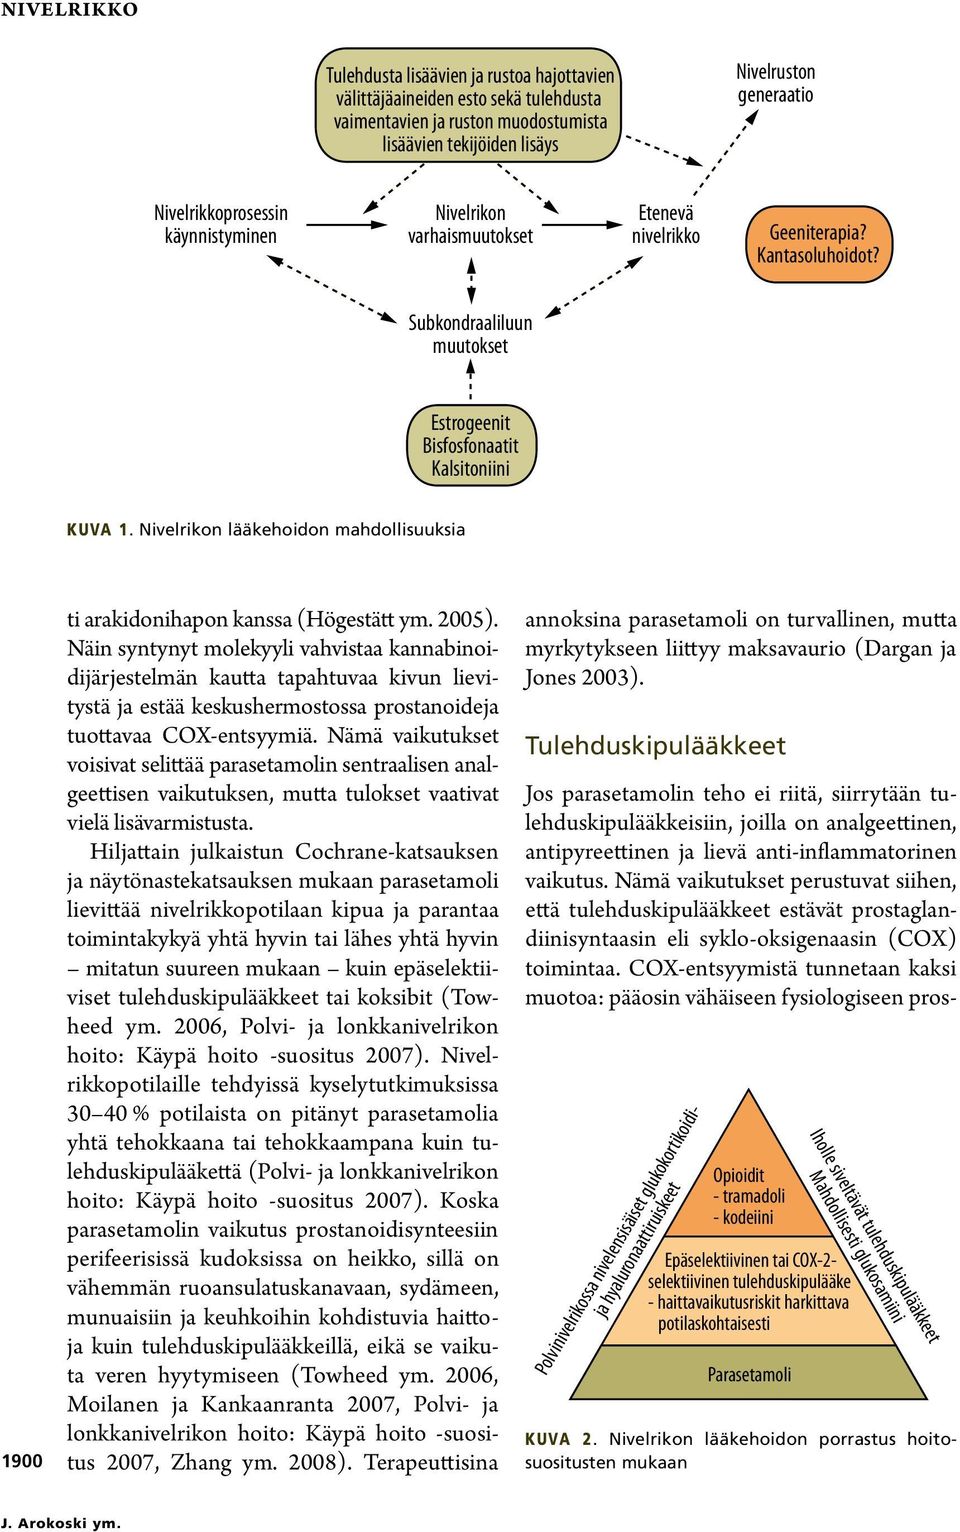 Nivelrikon lääkehoidon mahdollisuuksia 1900 ti arakidonihapon kanssa (Högestätt ym. 2005).